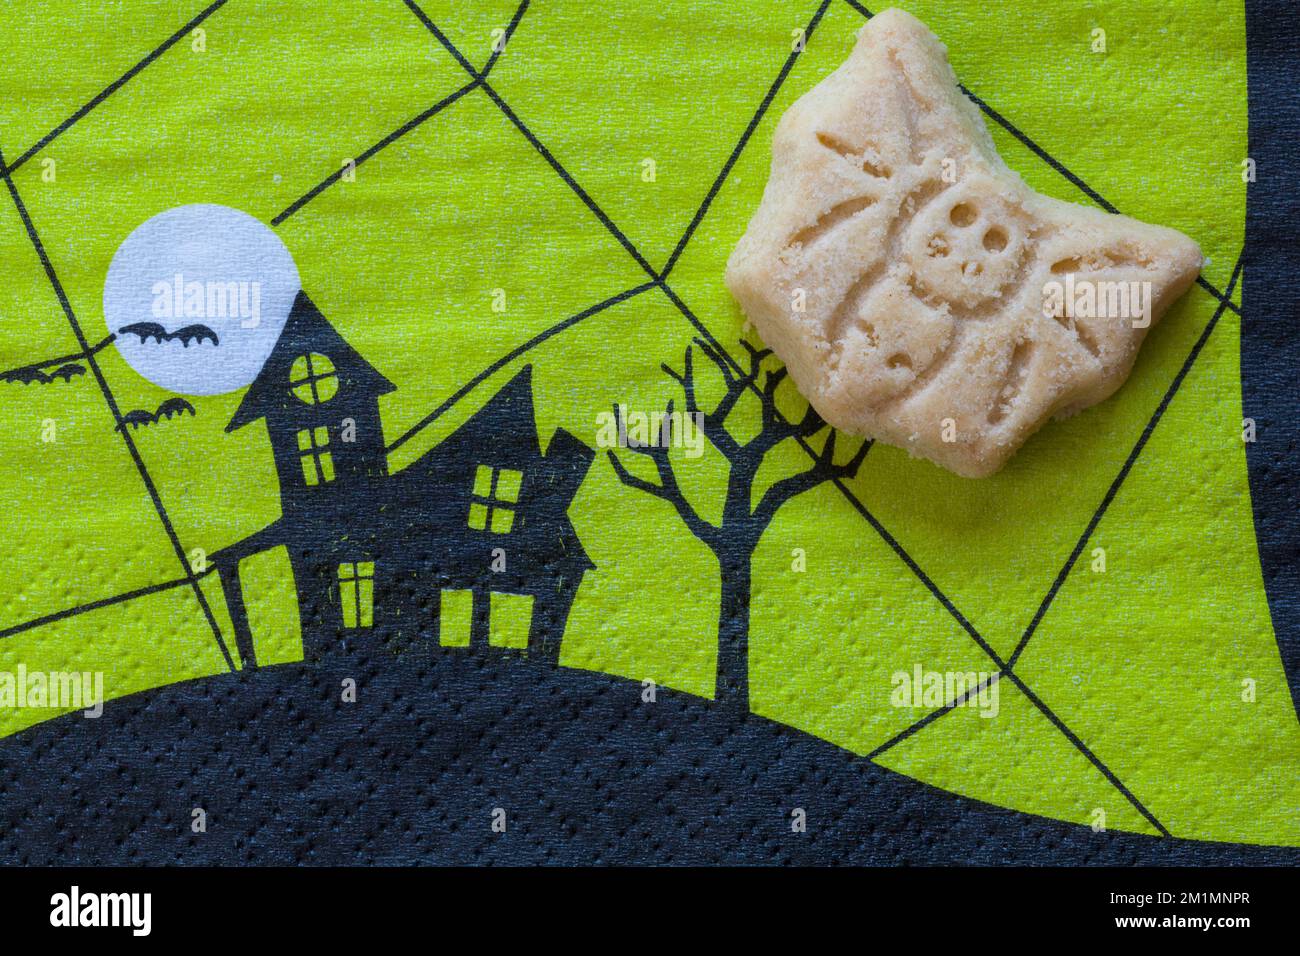 Kleine Halloween-Thematik, Butter, Shortbread, Kekse, Fledermaus auf grüner Halloween Servietten Serviette Serviette Serviette Stockfoto